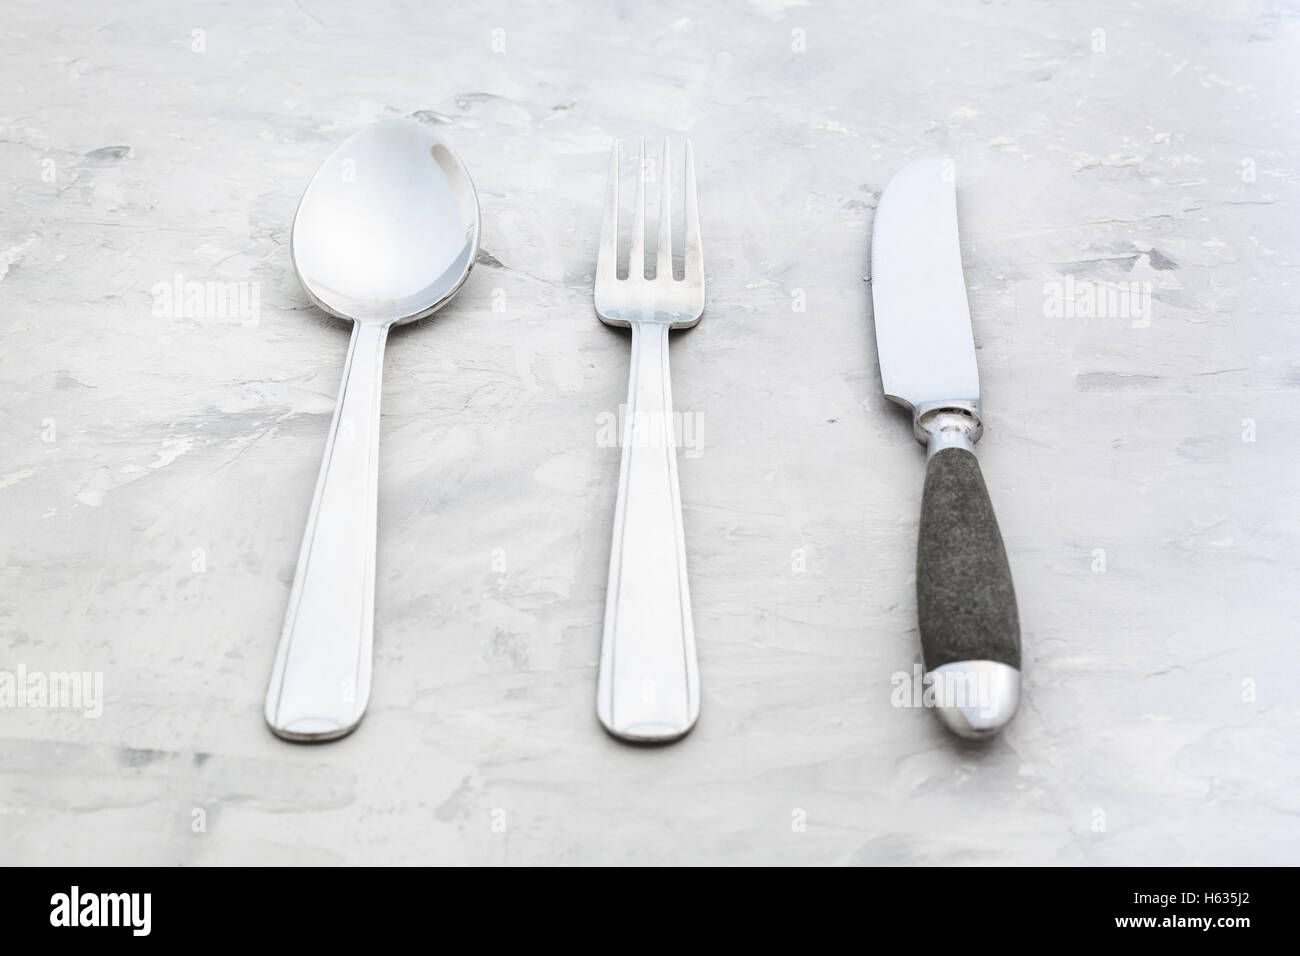 Concetto di cibo - set di posate da tavola coltello, forchetta, cucchiaio Zuppa su una superficie in calcestruzzo Foto Stock